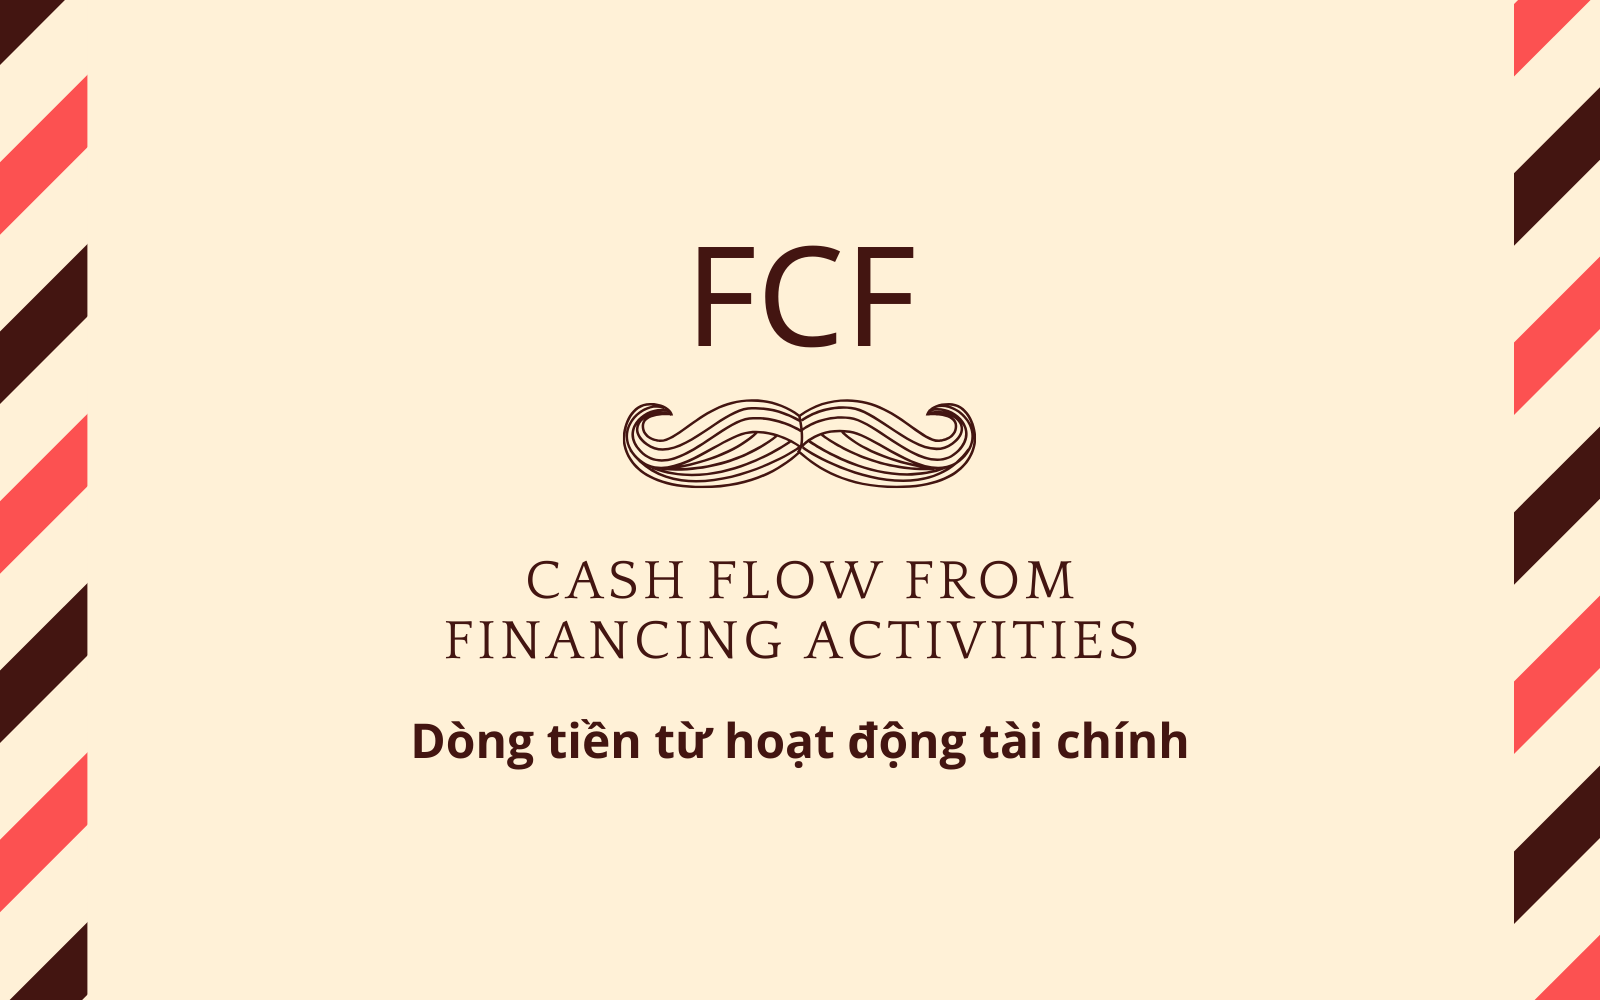 Dòng tiền hoạt động tài chính (Financing Cash Flow – FCF)